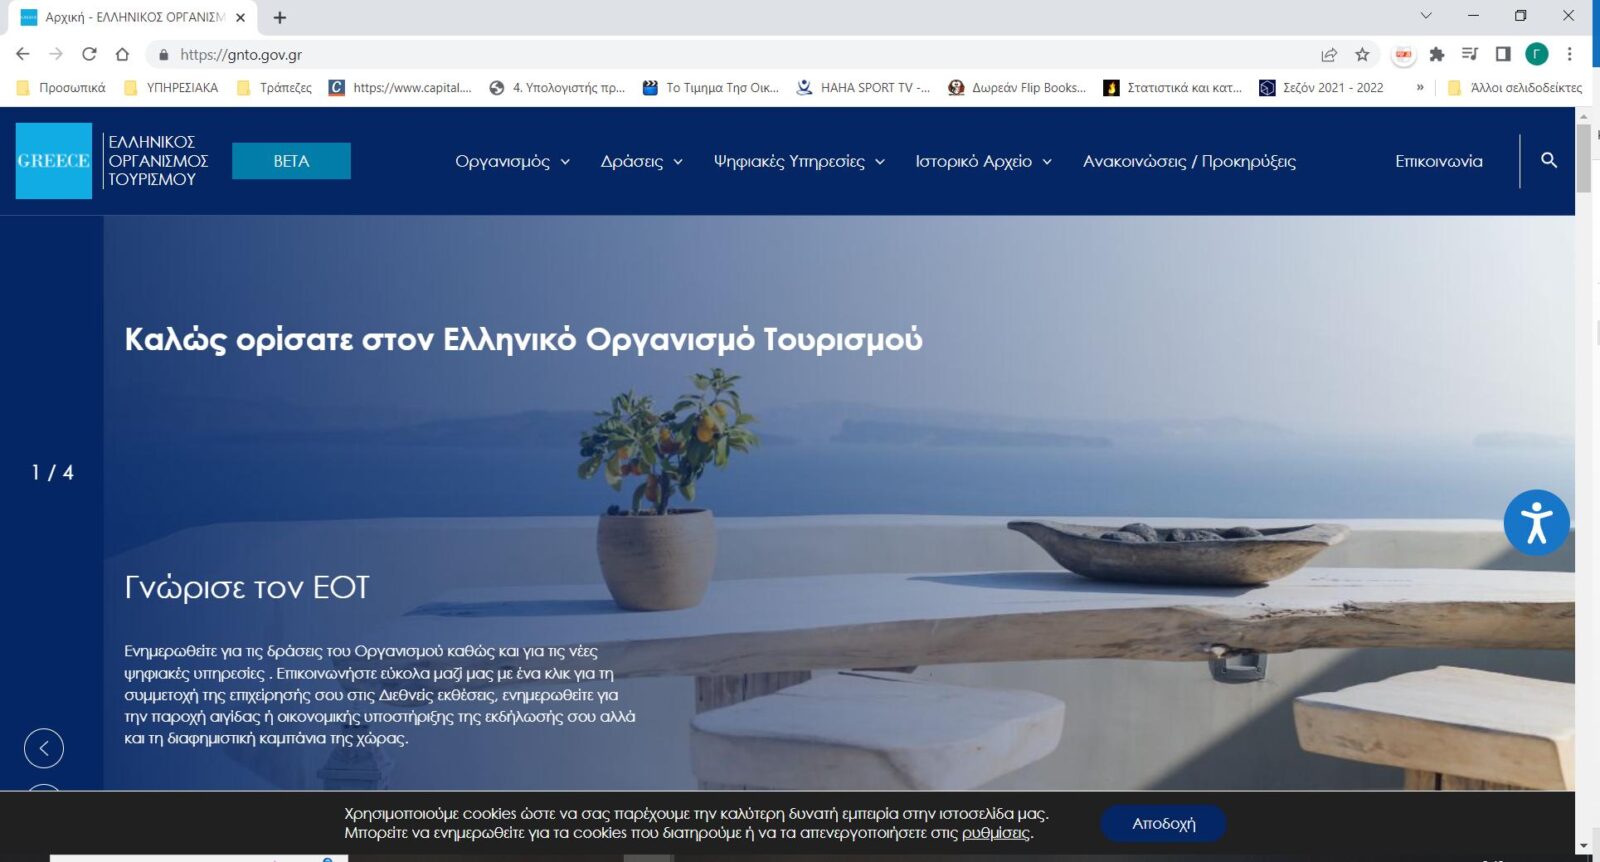 “Στον αέρα” η νέα αναβαθμισμένη εταιρική ιστοσελίδα του Ελληνικού Οργανισμού Τουρισμού